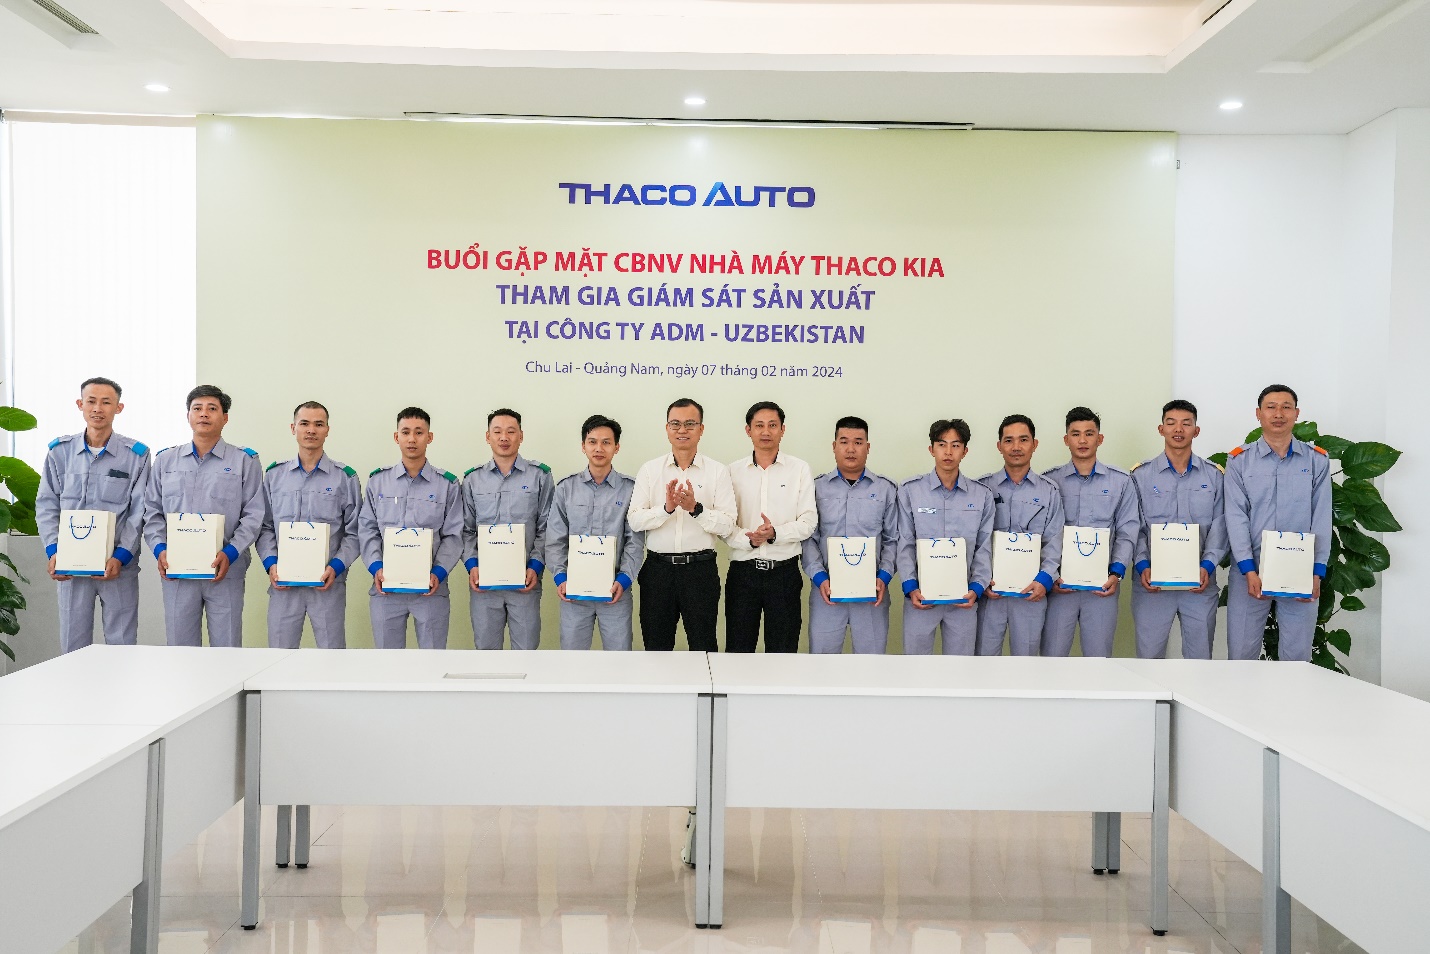 Nhà máy Thaco Kia tham gia giám sát sản xuất xe Kia Sonet tại Uzbekistan - Ảnh 3.